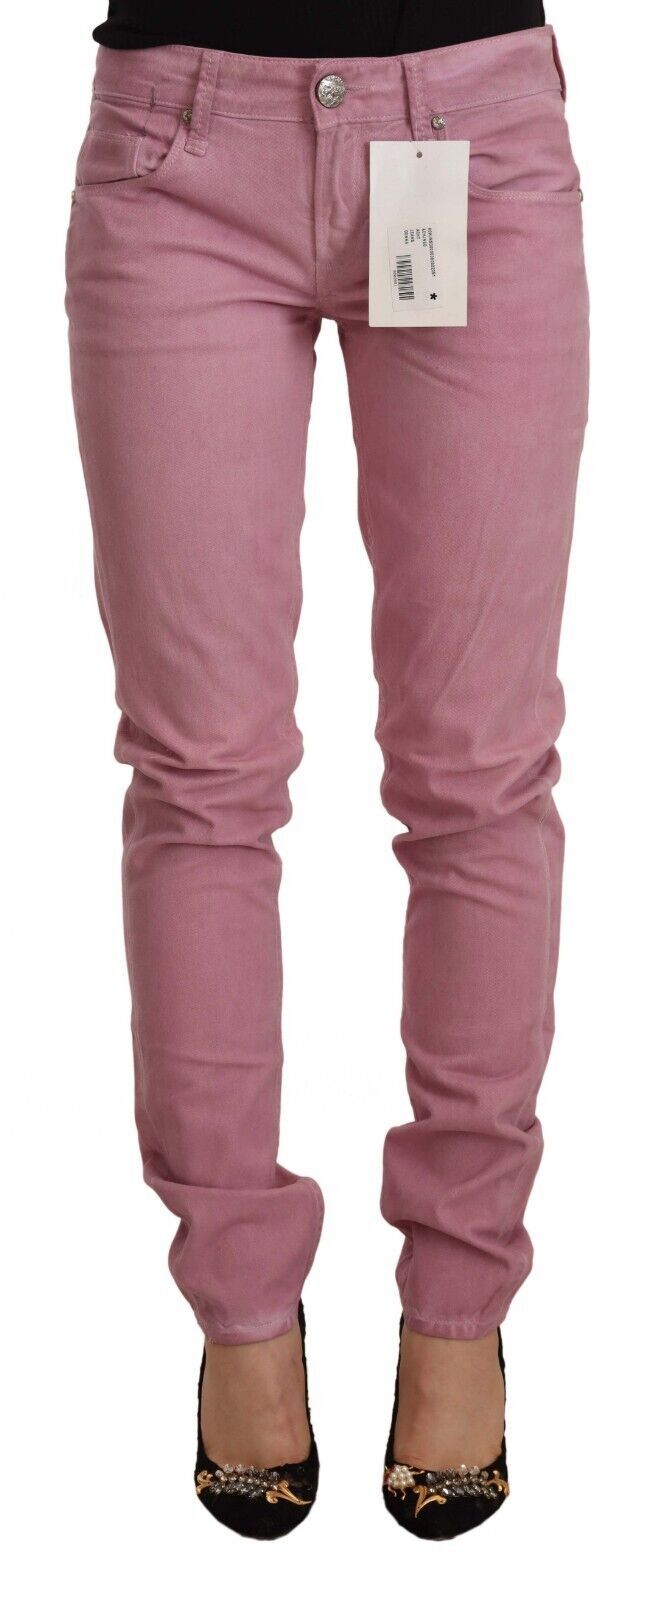 Розови памучни тесни дамски тесни дънки Acht